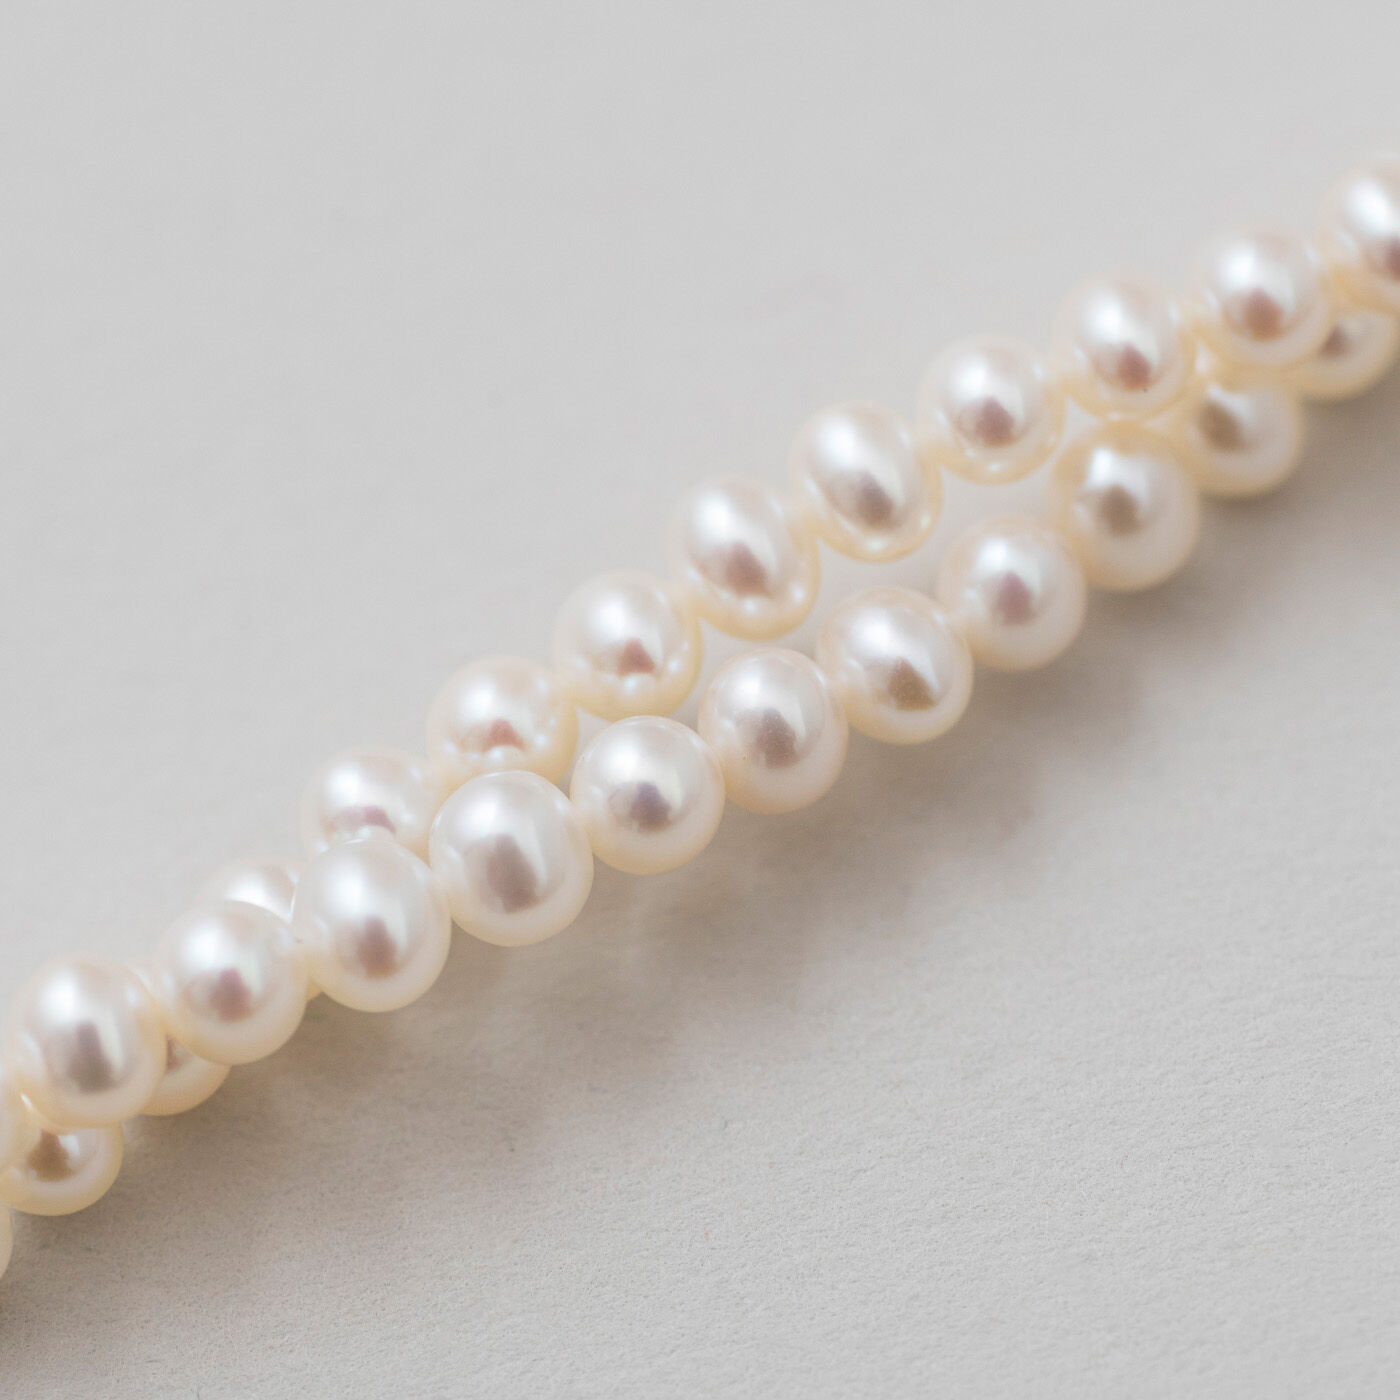 ＆Stories|神戸の老舗真珠メーカーが手掛けた 淡水パールのネックレス〈シルバー925〉|パール粒も少し大きめでボリューム感があります。